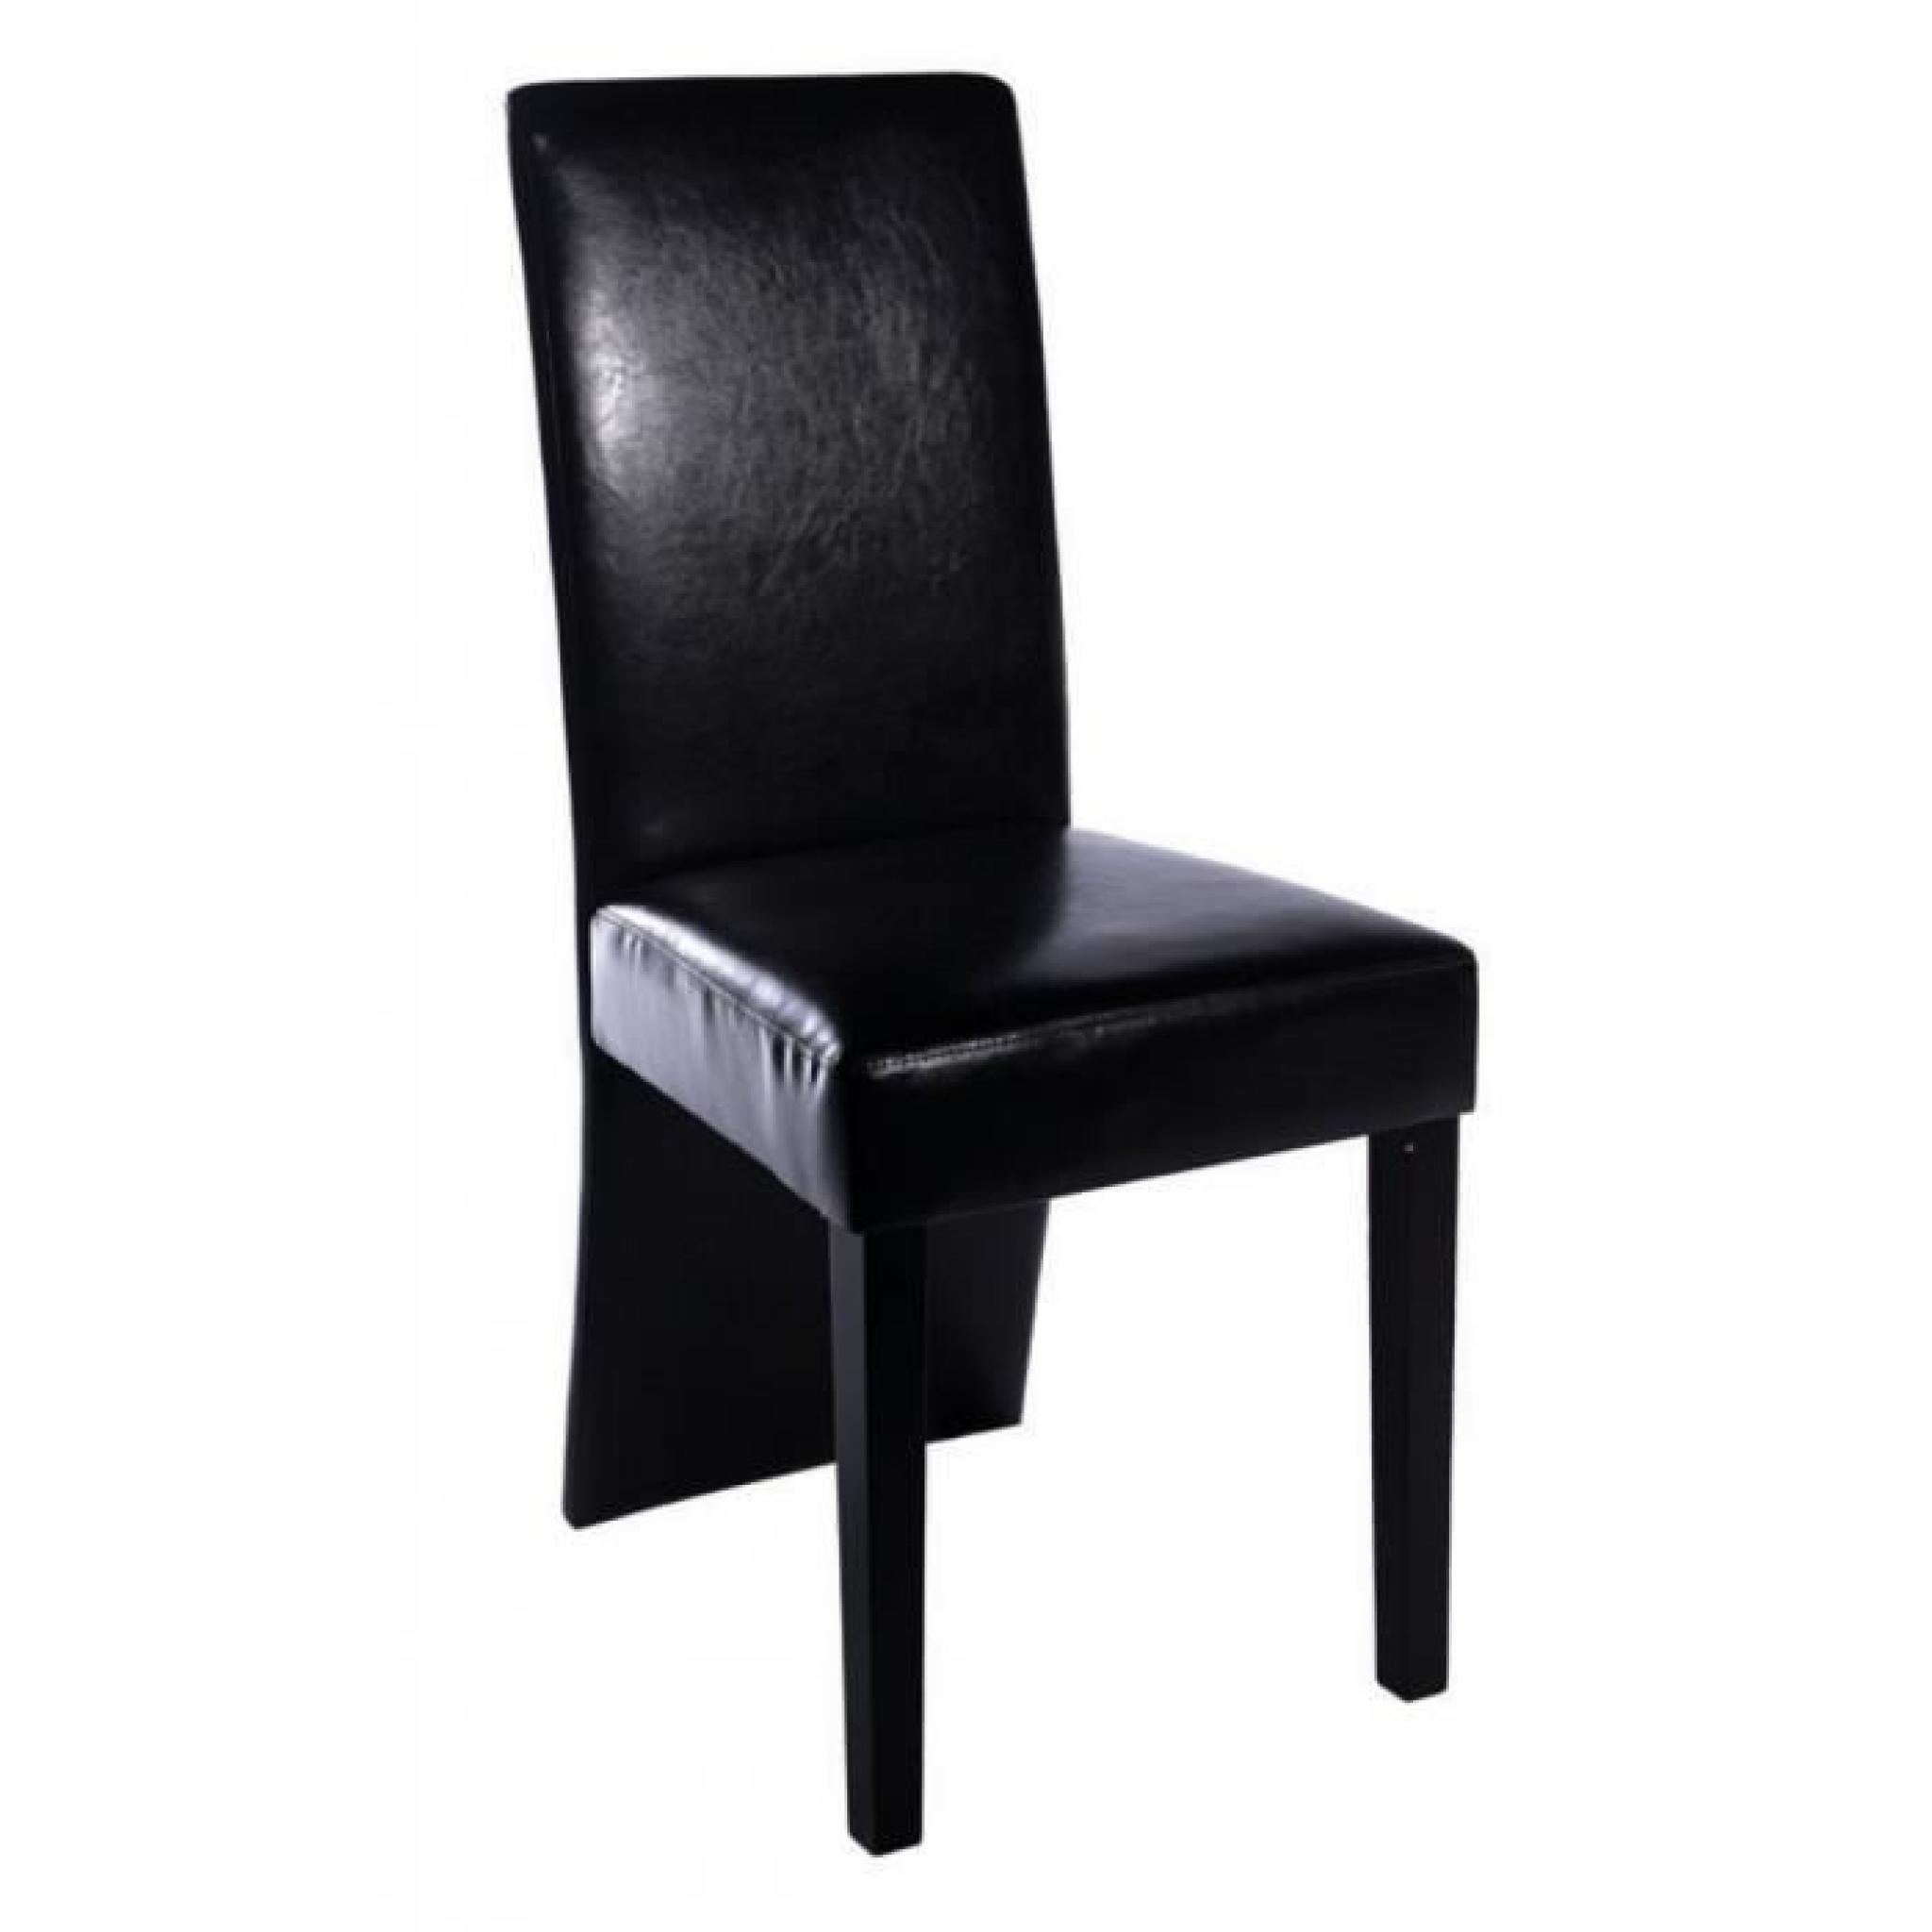 Chaise design bois noir (lot de 6)simili cuir bois pas cher